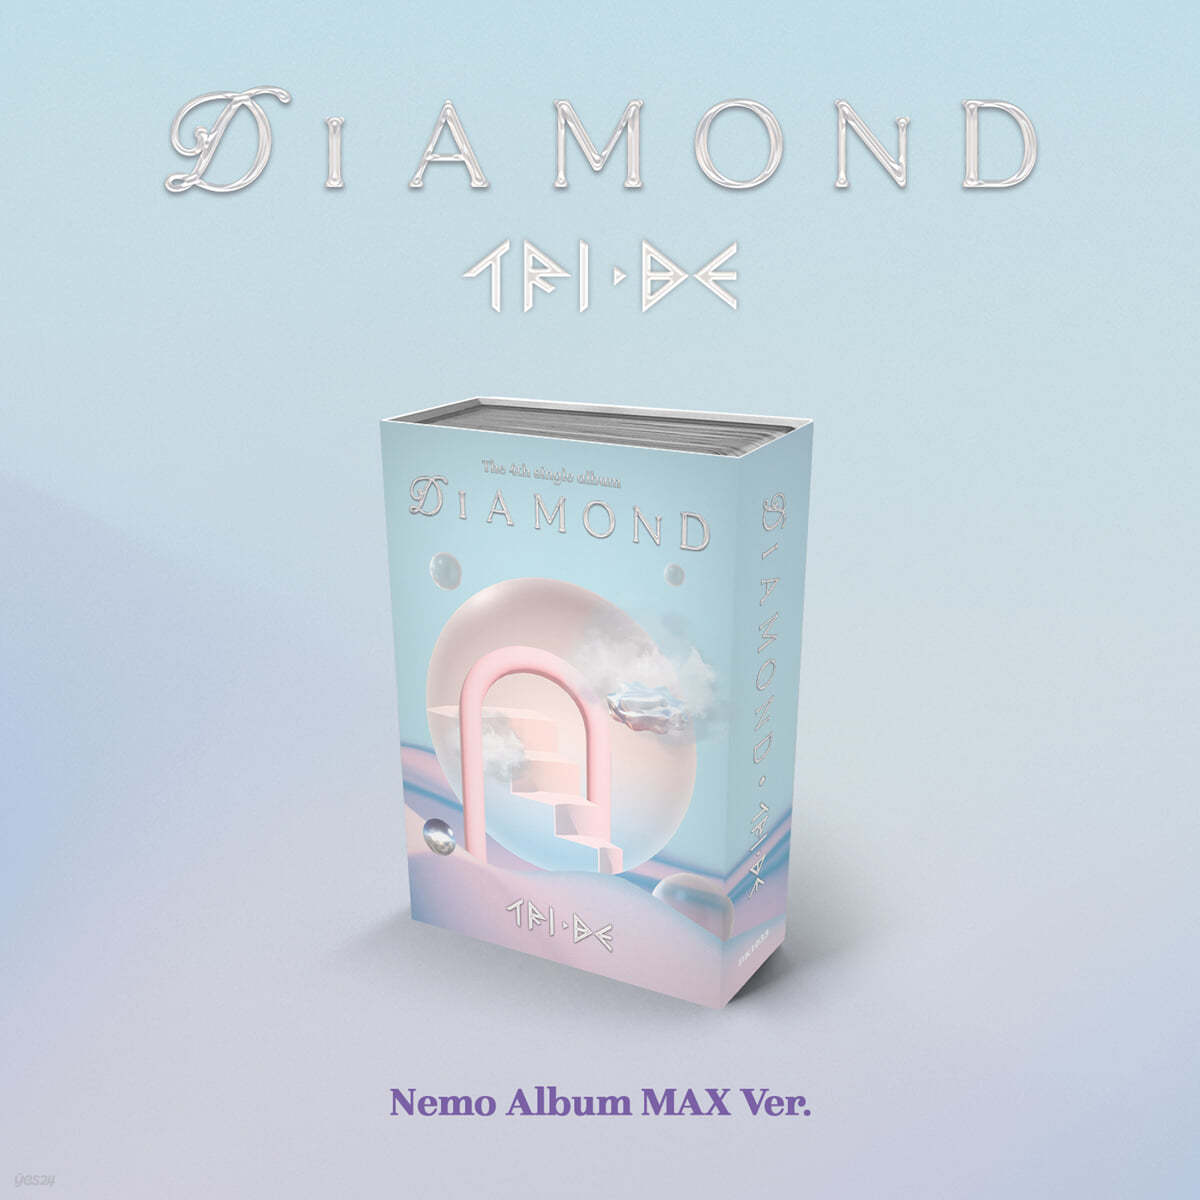 트라이비 (TRI.BE) - 싱글앨범 4집 : Diamond [Nemo Album MAX ver.]